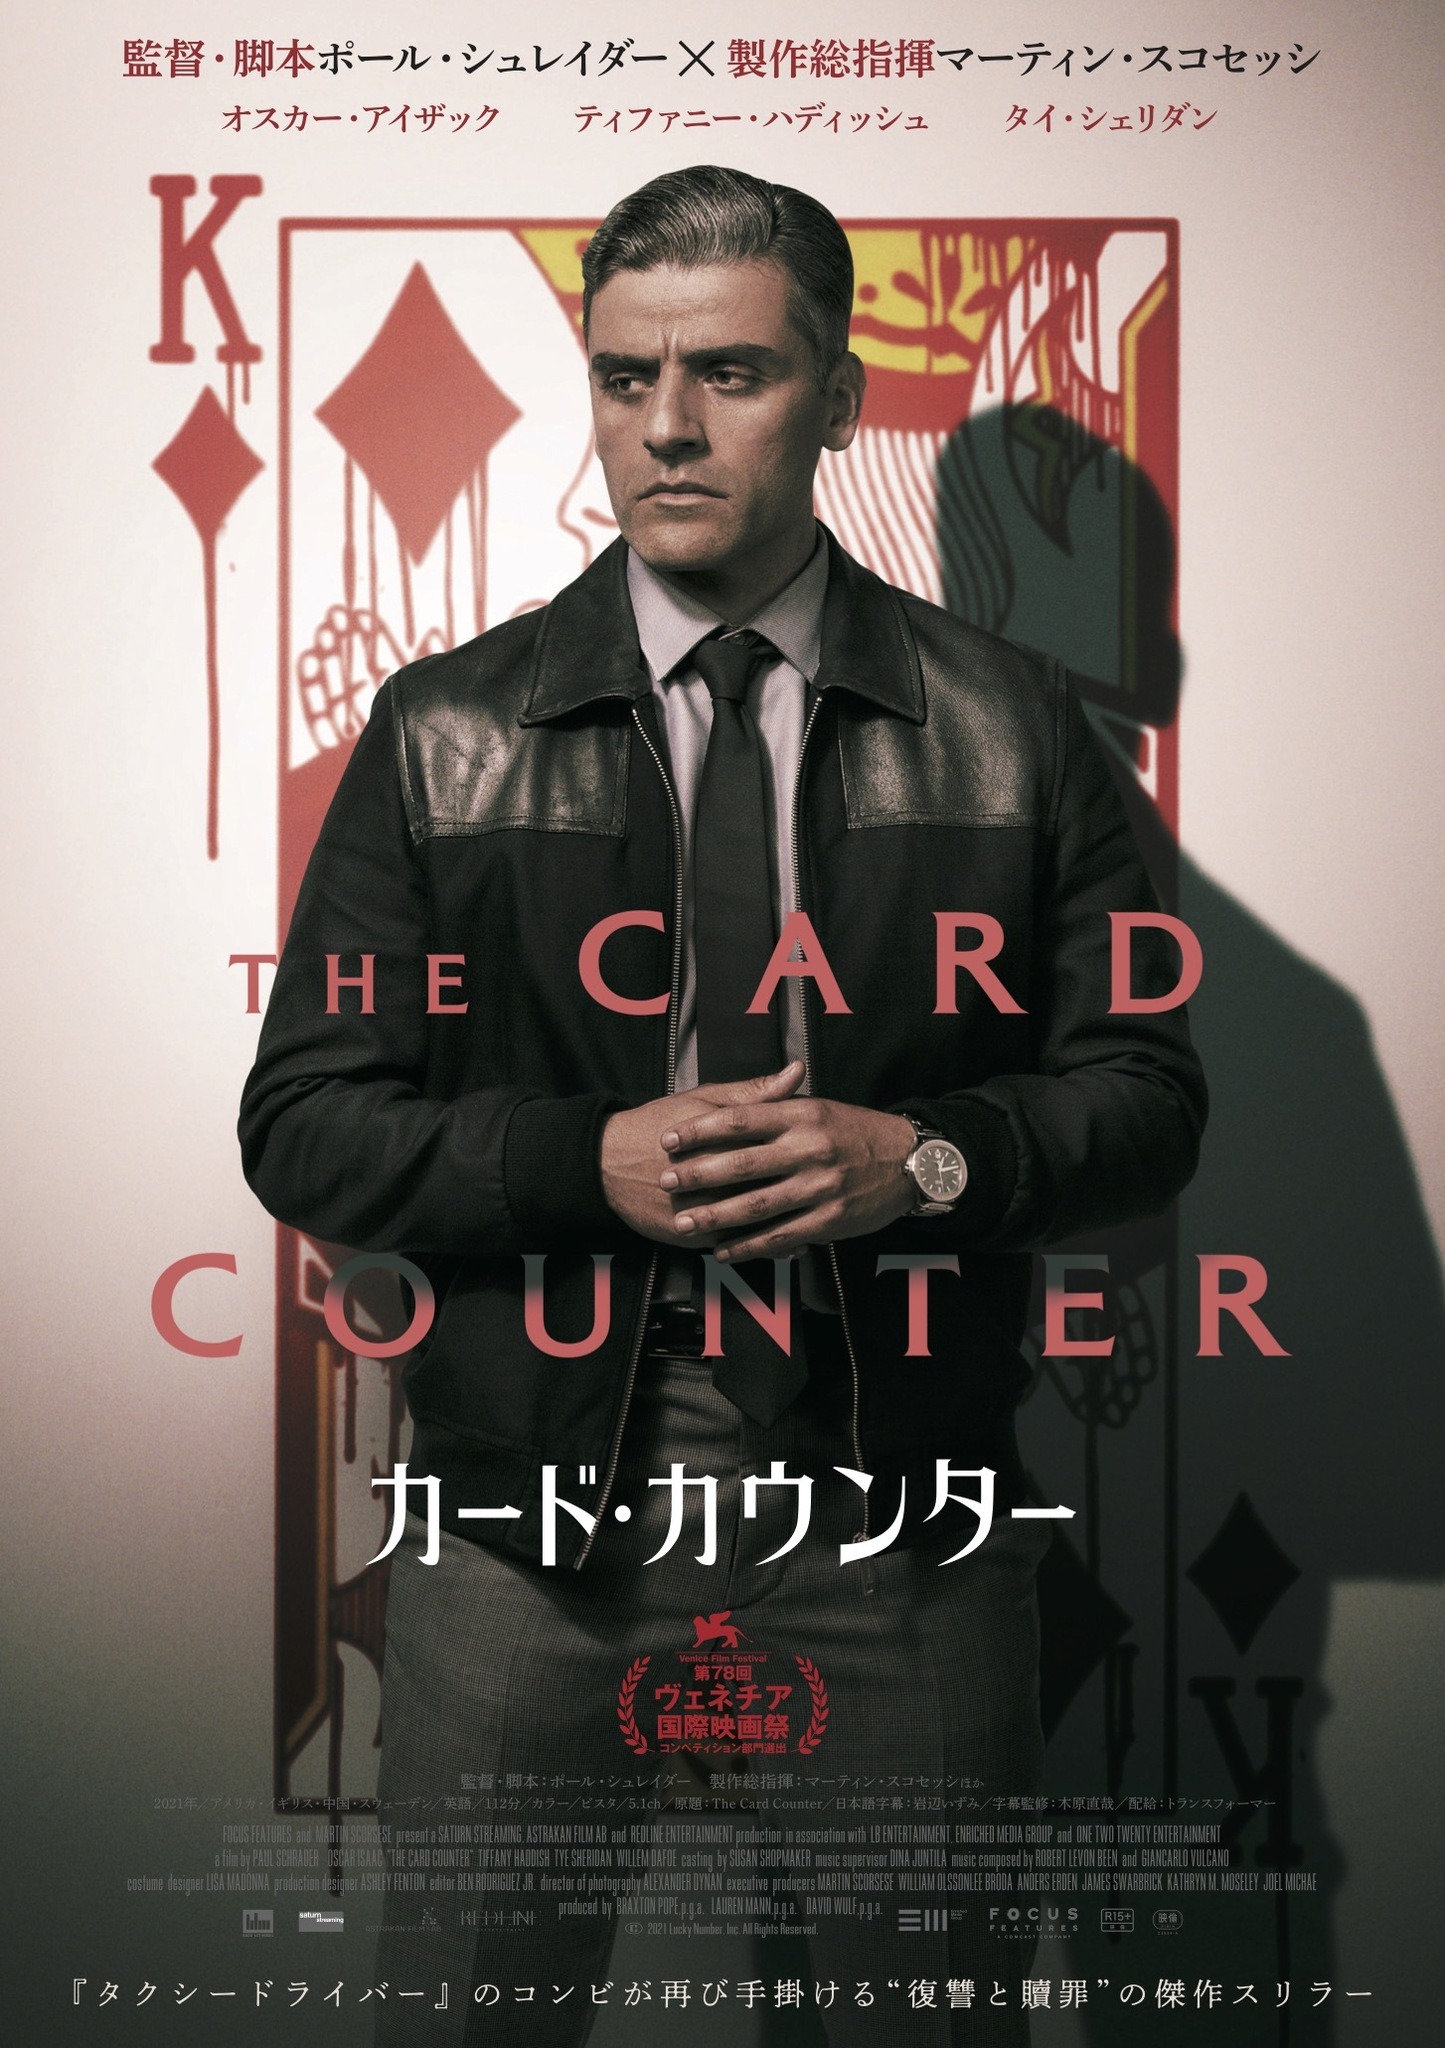 オスカー・アイザック、血塗られたダイヤのキングの前で佇む『カード・カウンター』日本版ポスター | cinemacafe.net